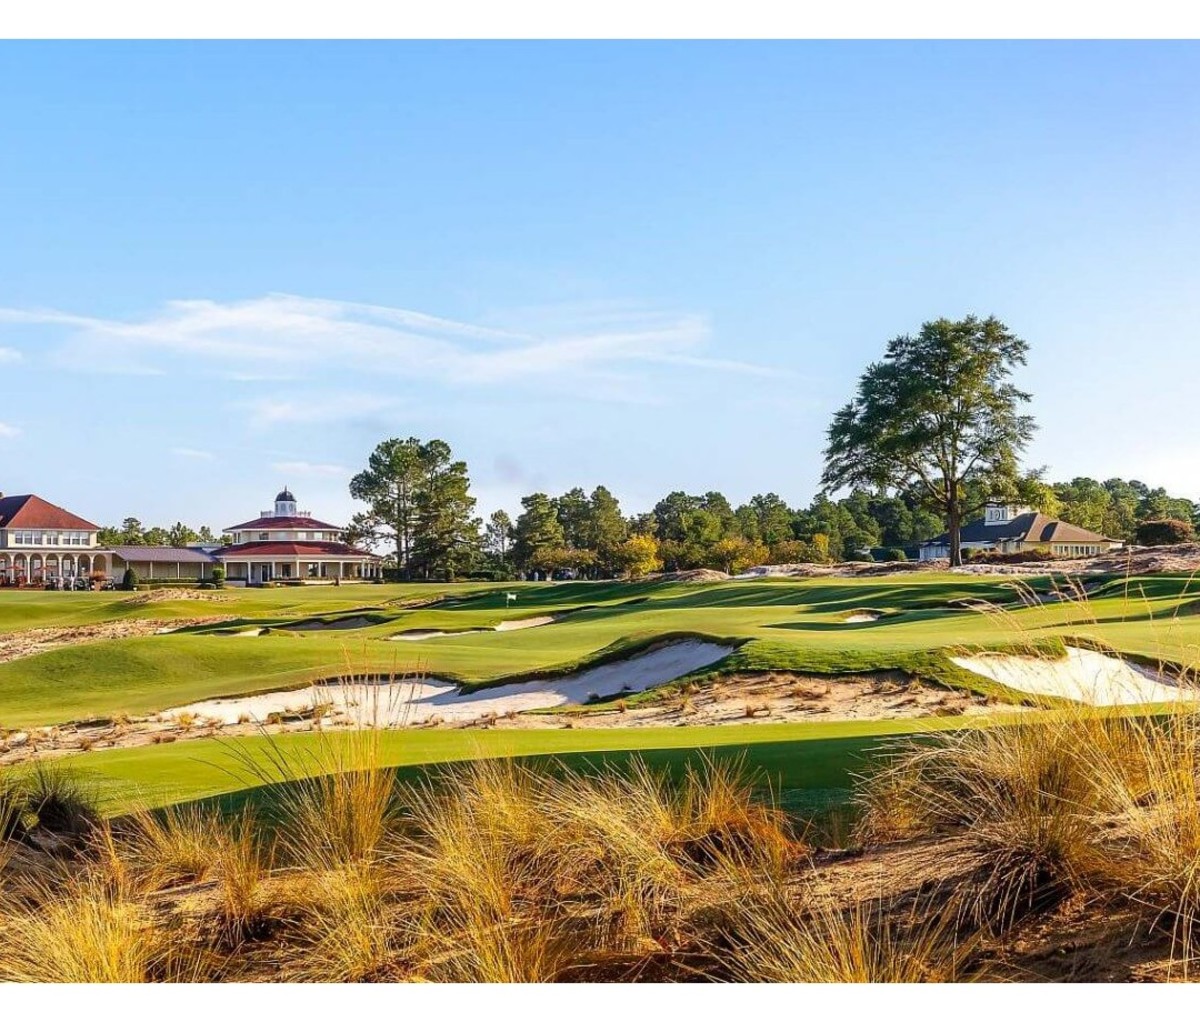 Landscape of The Cradle golf course at Pinehurst Resort